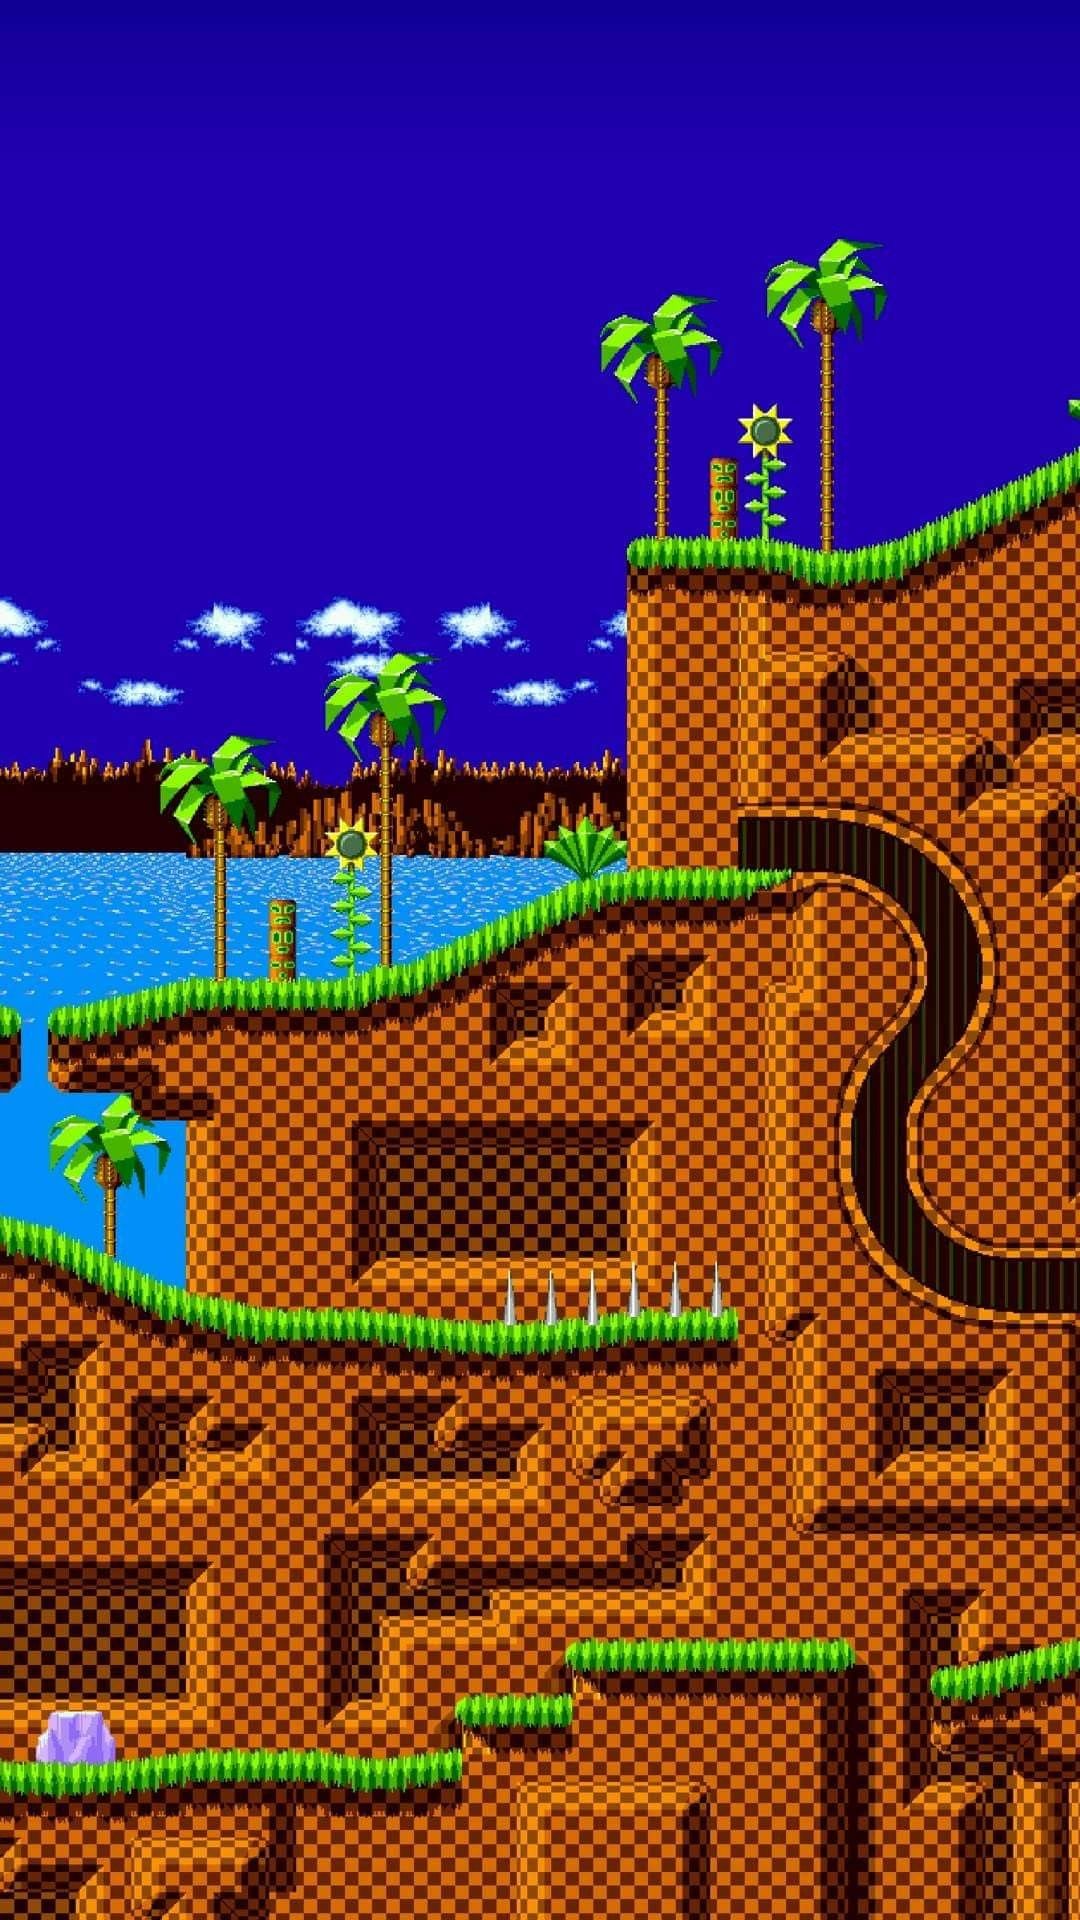 Tận hưởng không gian xanh tươi của Green Hill Zone Wallpapers. Những hình nền với biểu tượng Sonic và những nhân vật đáng yêu sẽ giúp trang trí màn hình của bạn trở nên thật sinh động và cuốn hút.